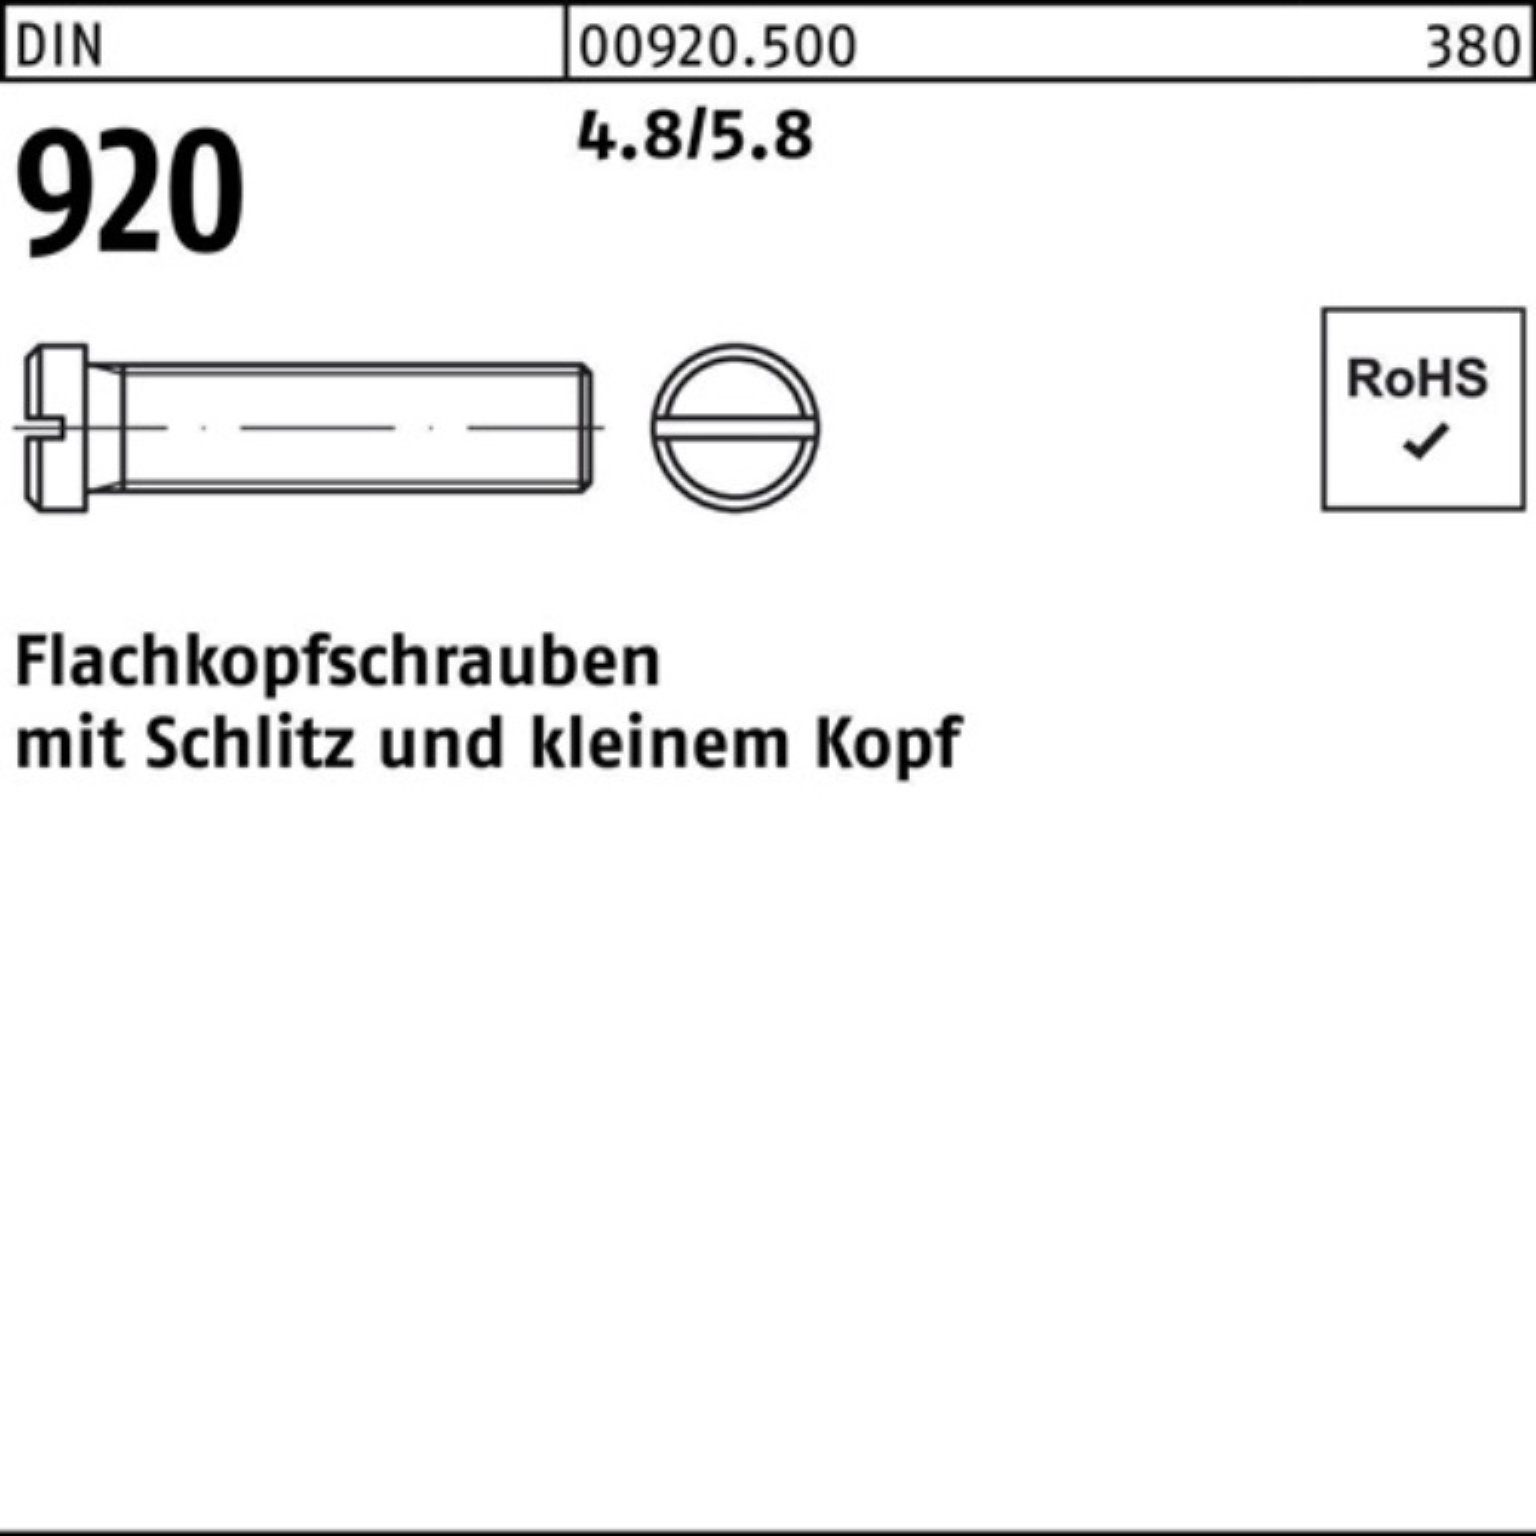 Reyher Schraube 100er Pack Flachkopfschraube M3x Schlitz 10 Stück 920 4.8/5.8 DIN 100